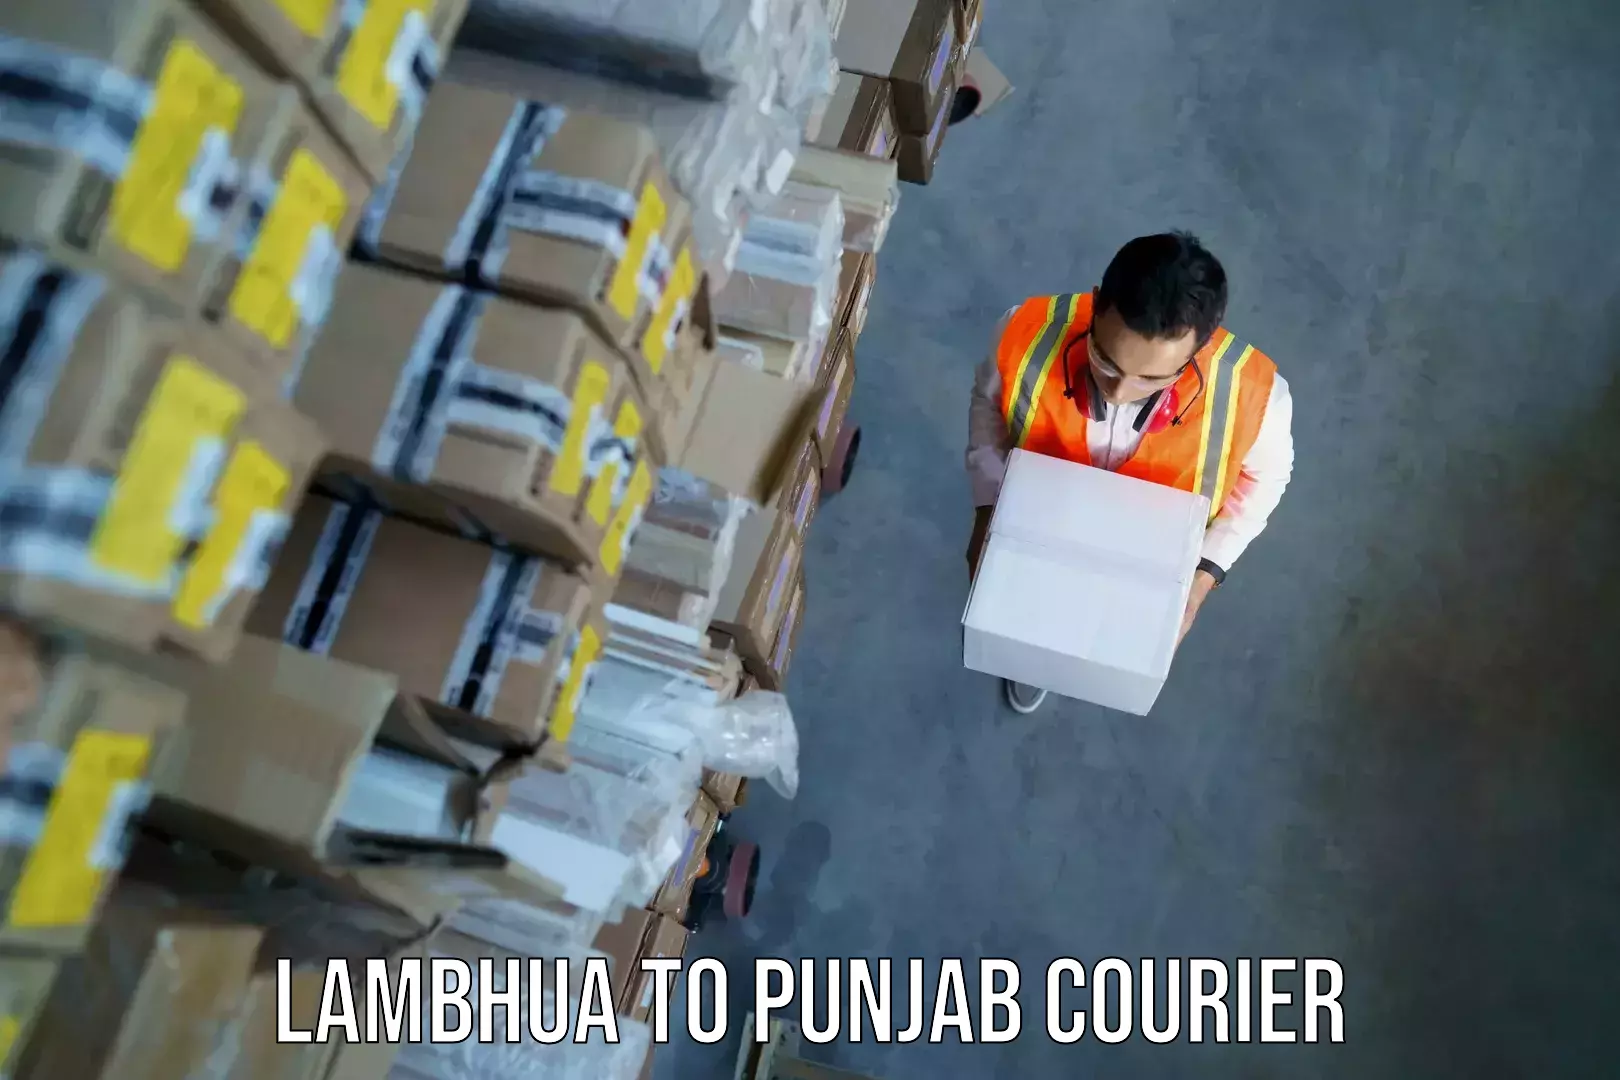 Baggage transport coordination Lambhua to Punjab